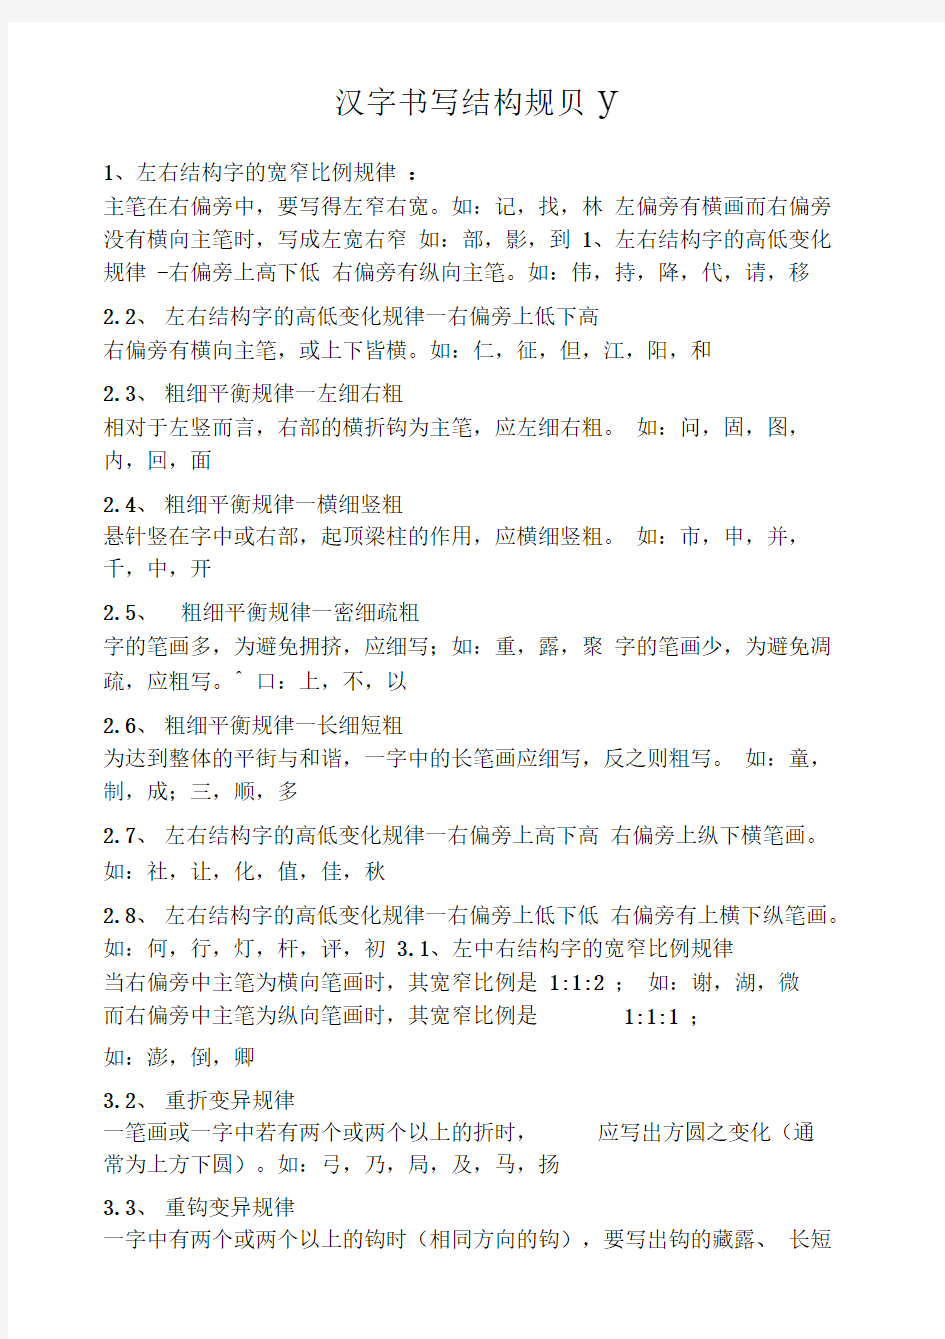 汉字书写结构规则(精心整理)A4